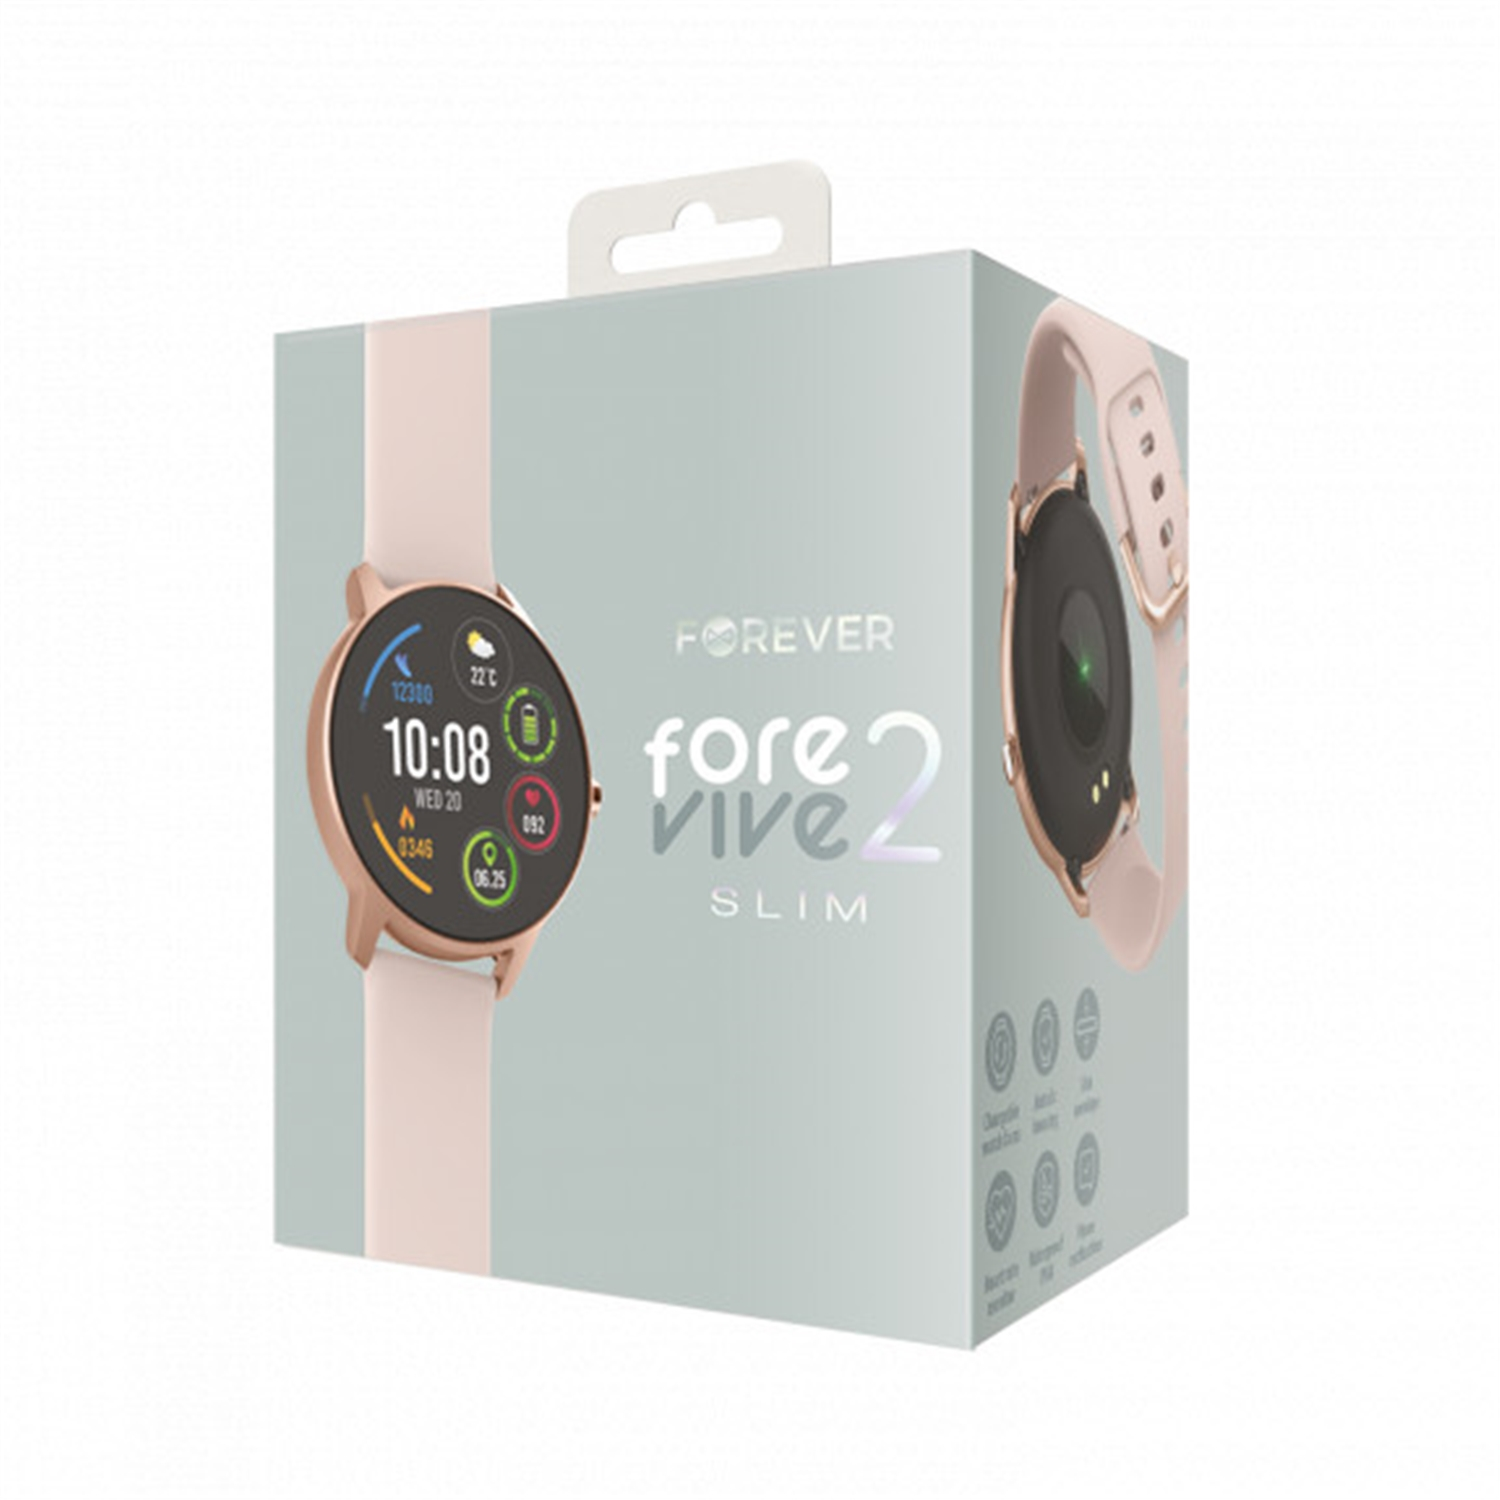 Silikon, Smartwatch Rosa SB-326 2 ForeVive Slim FOREVER